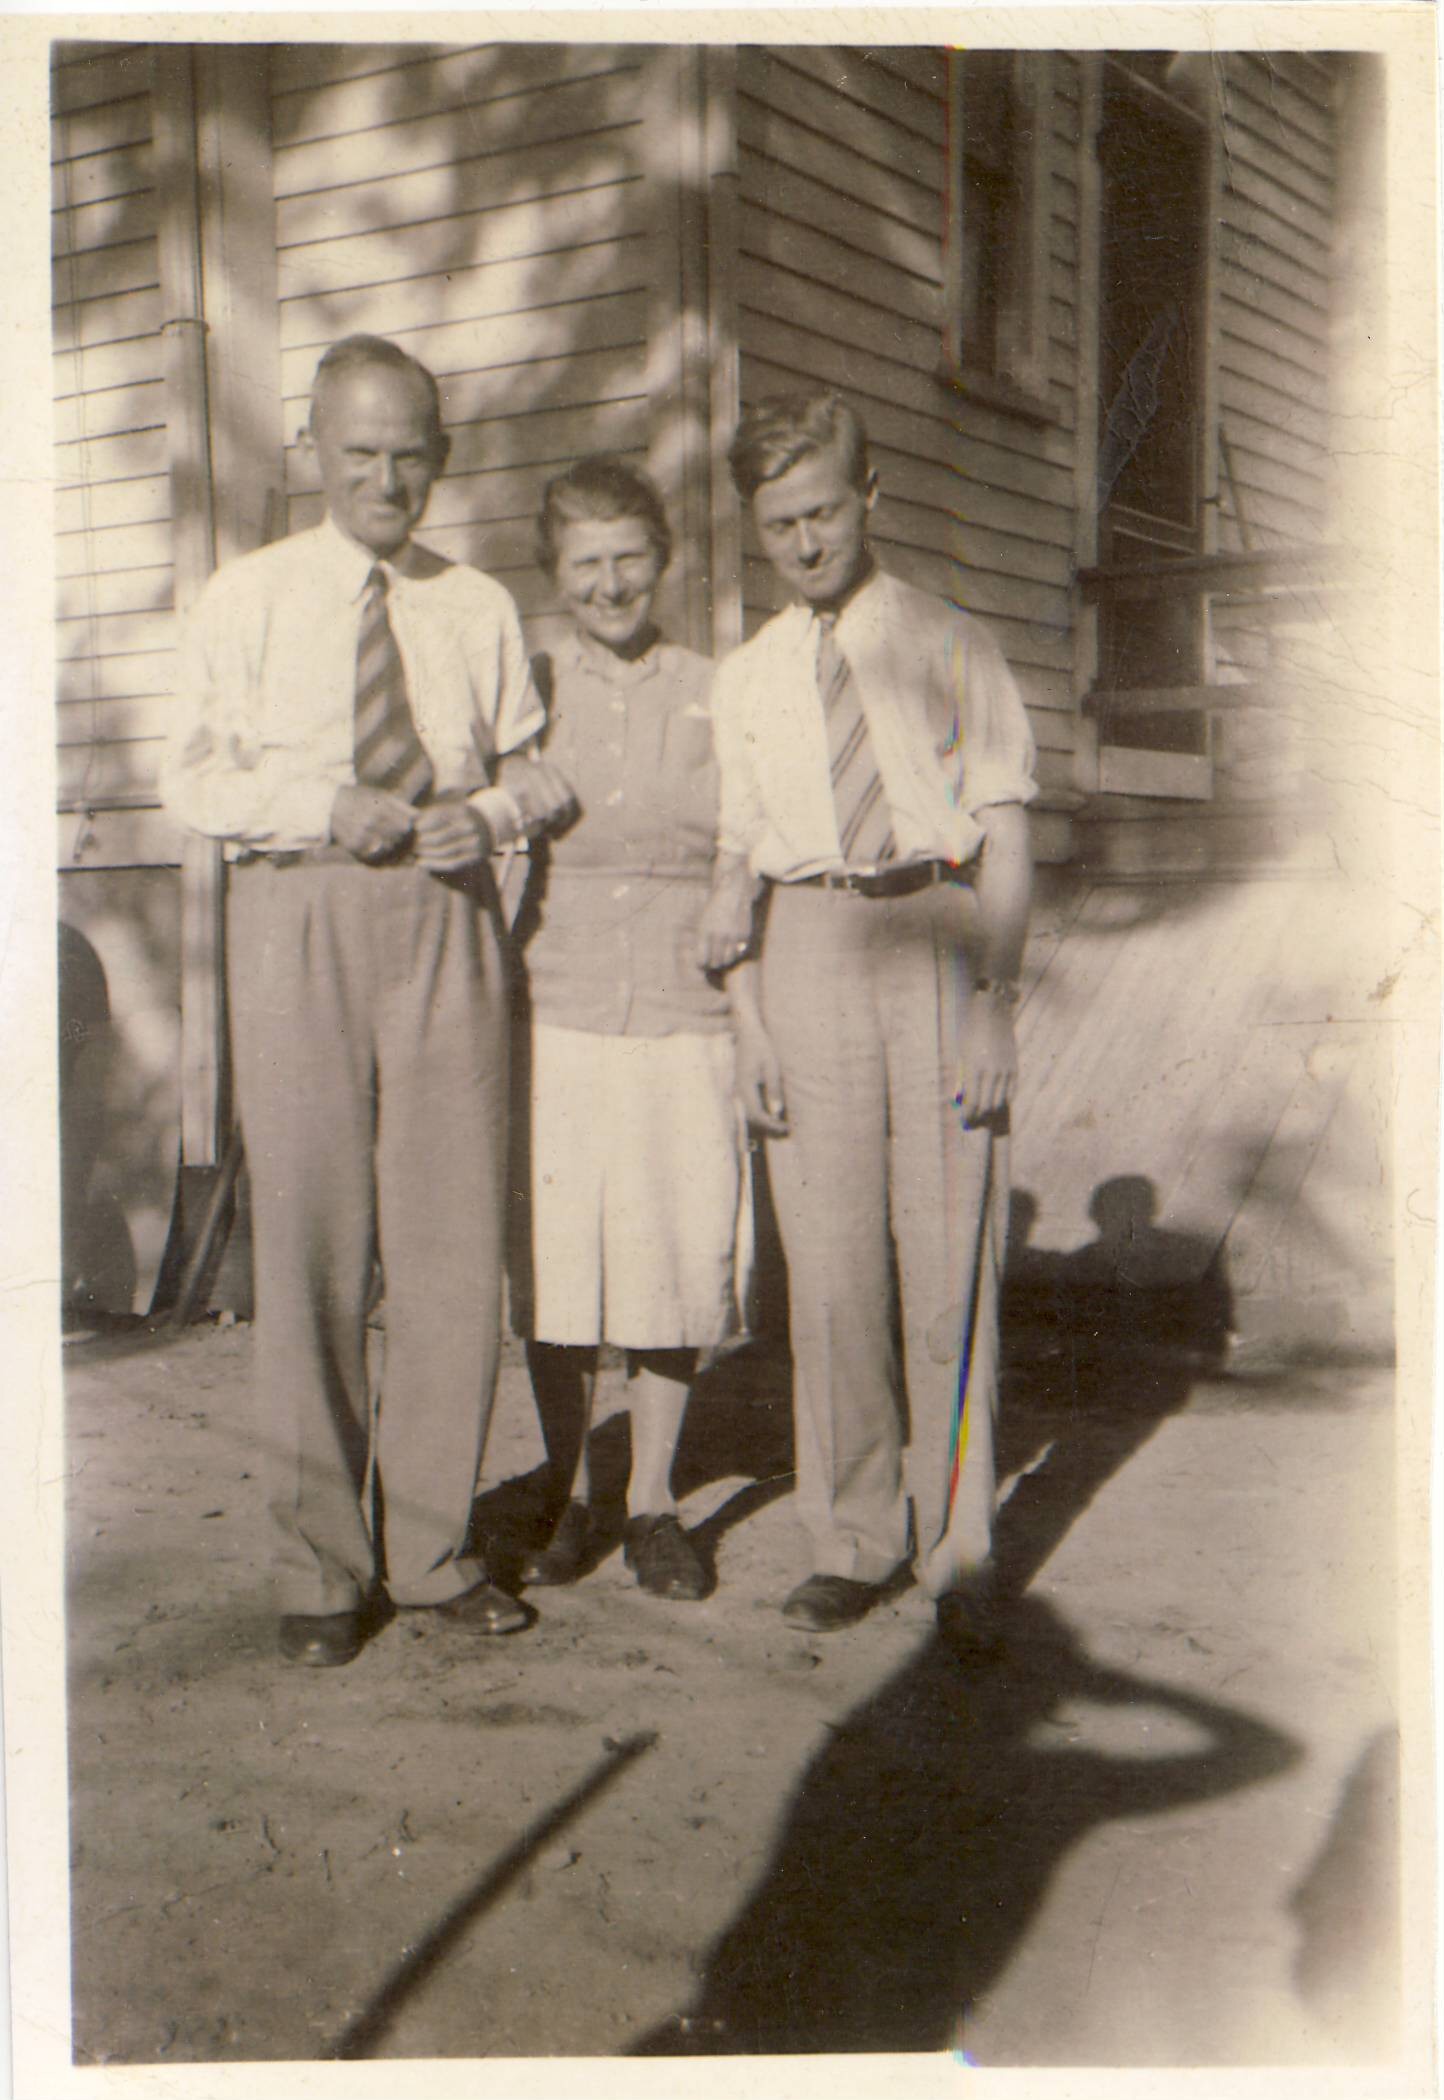 Curt, Gertrude and Gerhardt Weiss